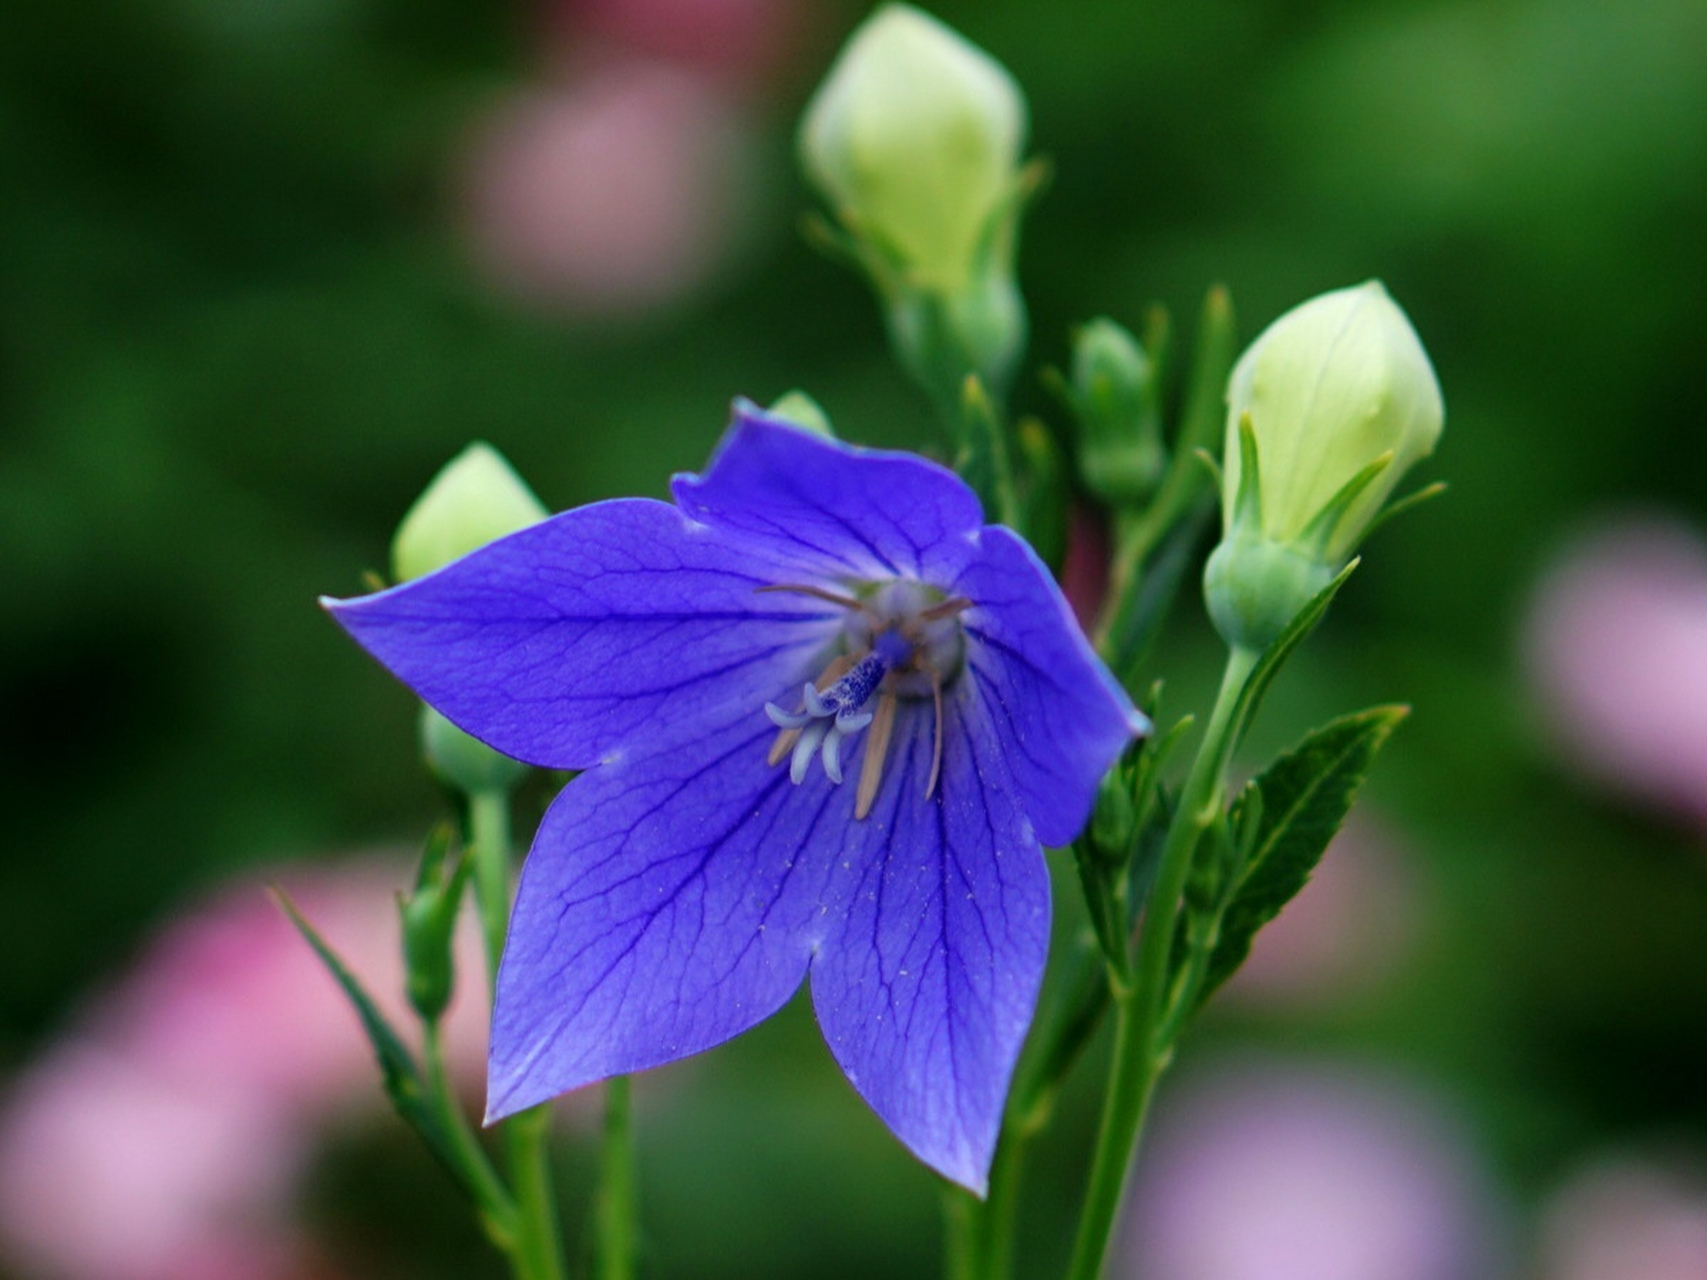 分享图片:公园里紫色或紫蓝色的桔梗,铃当花 ,花色清雅,美丽又可爱